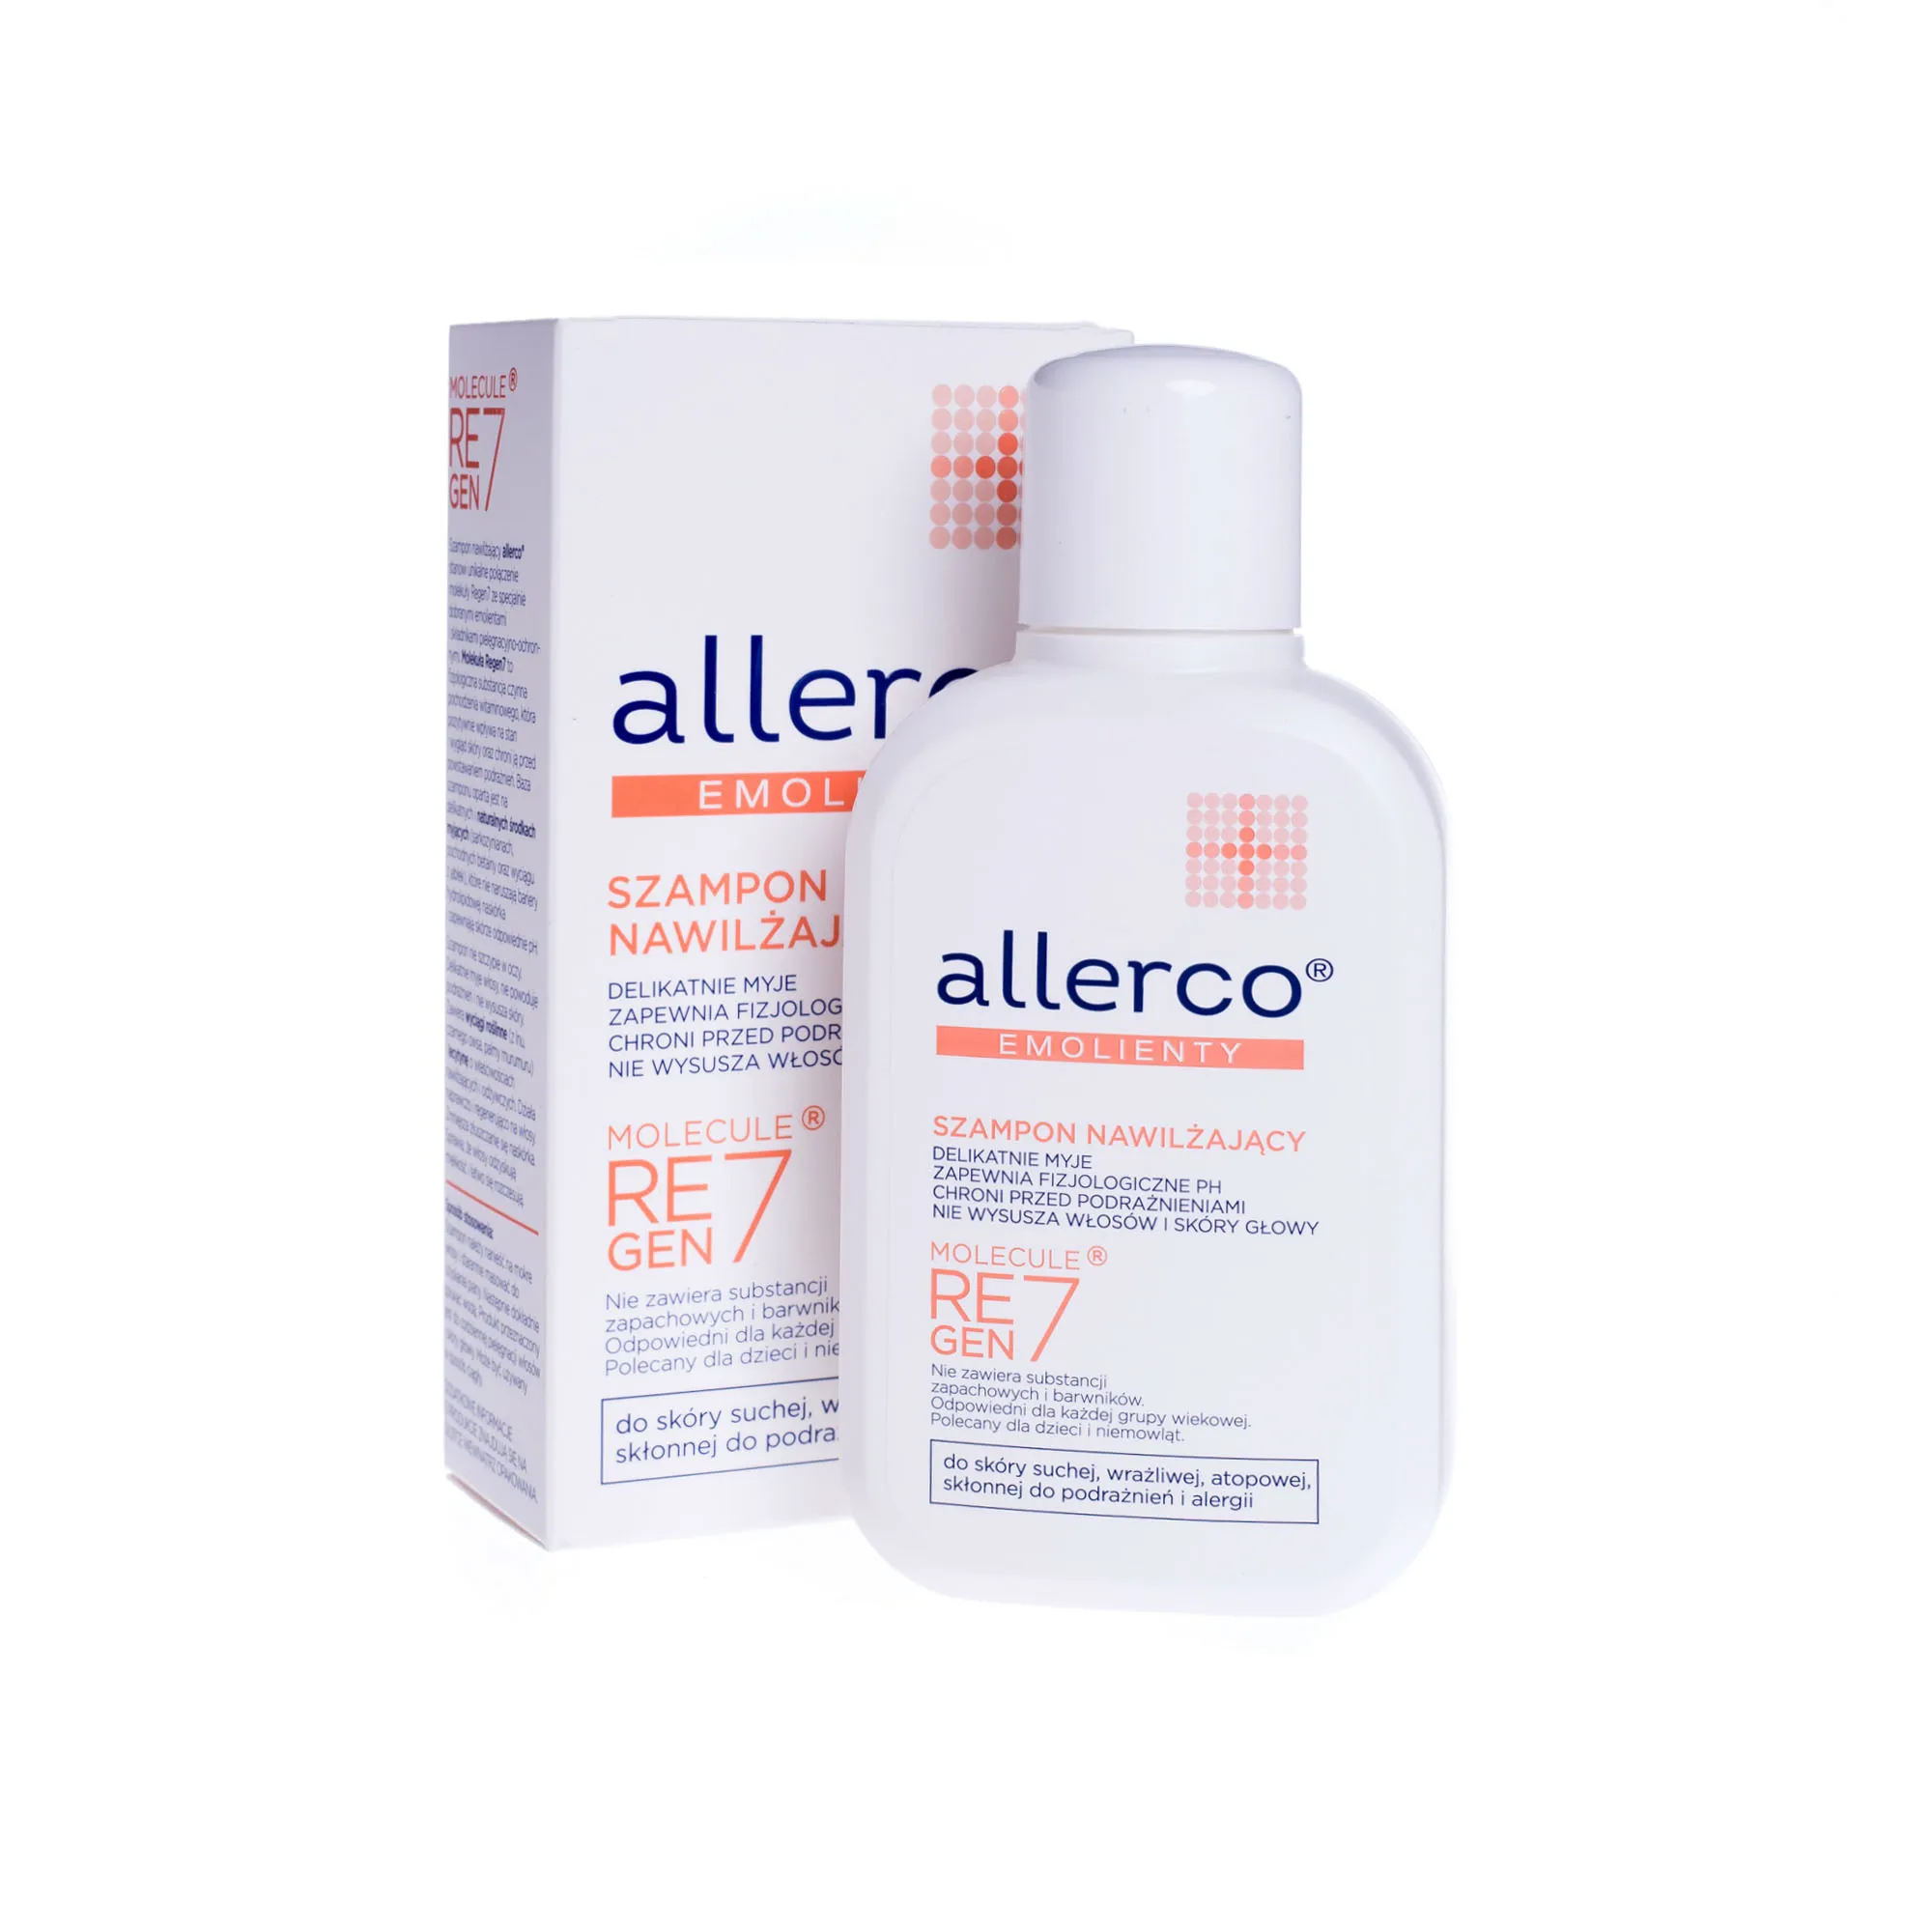 allerco szampon nawilżający 200 ml